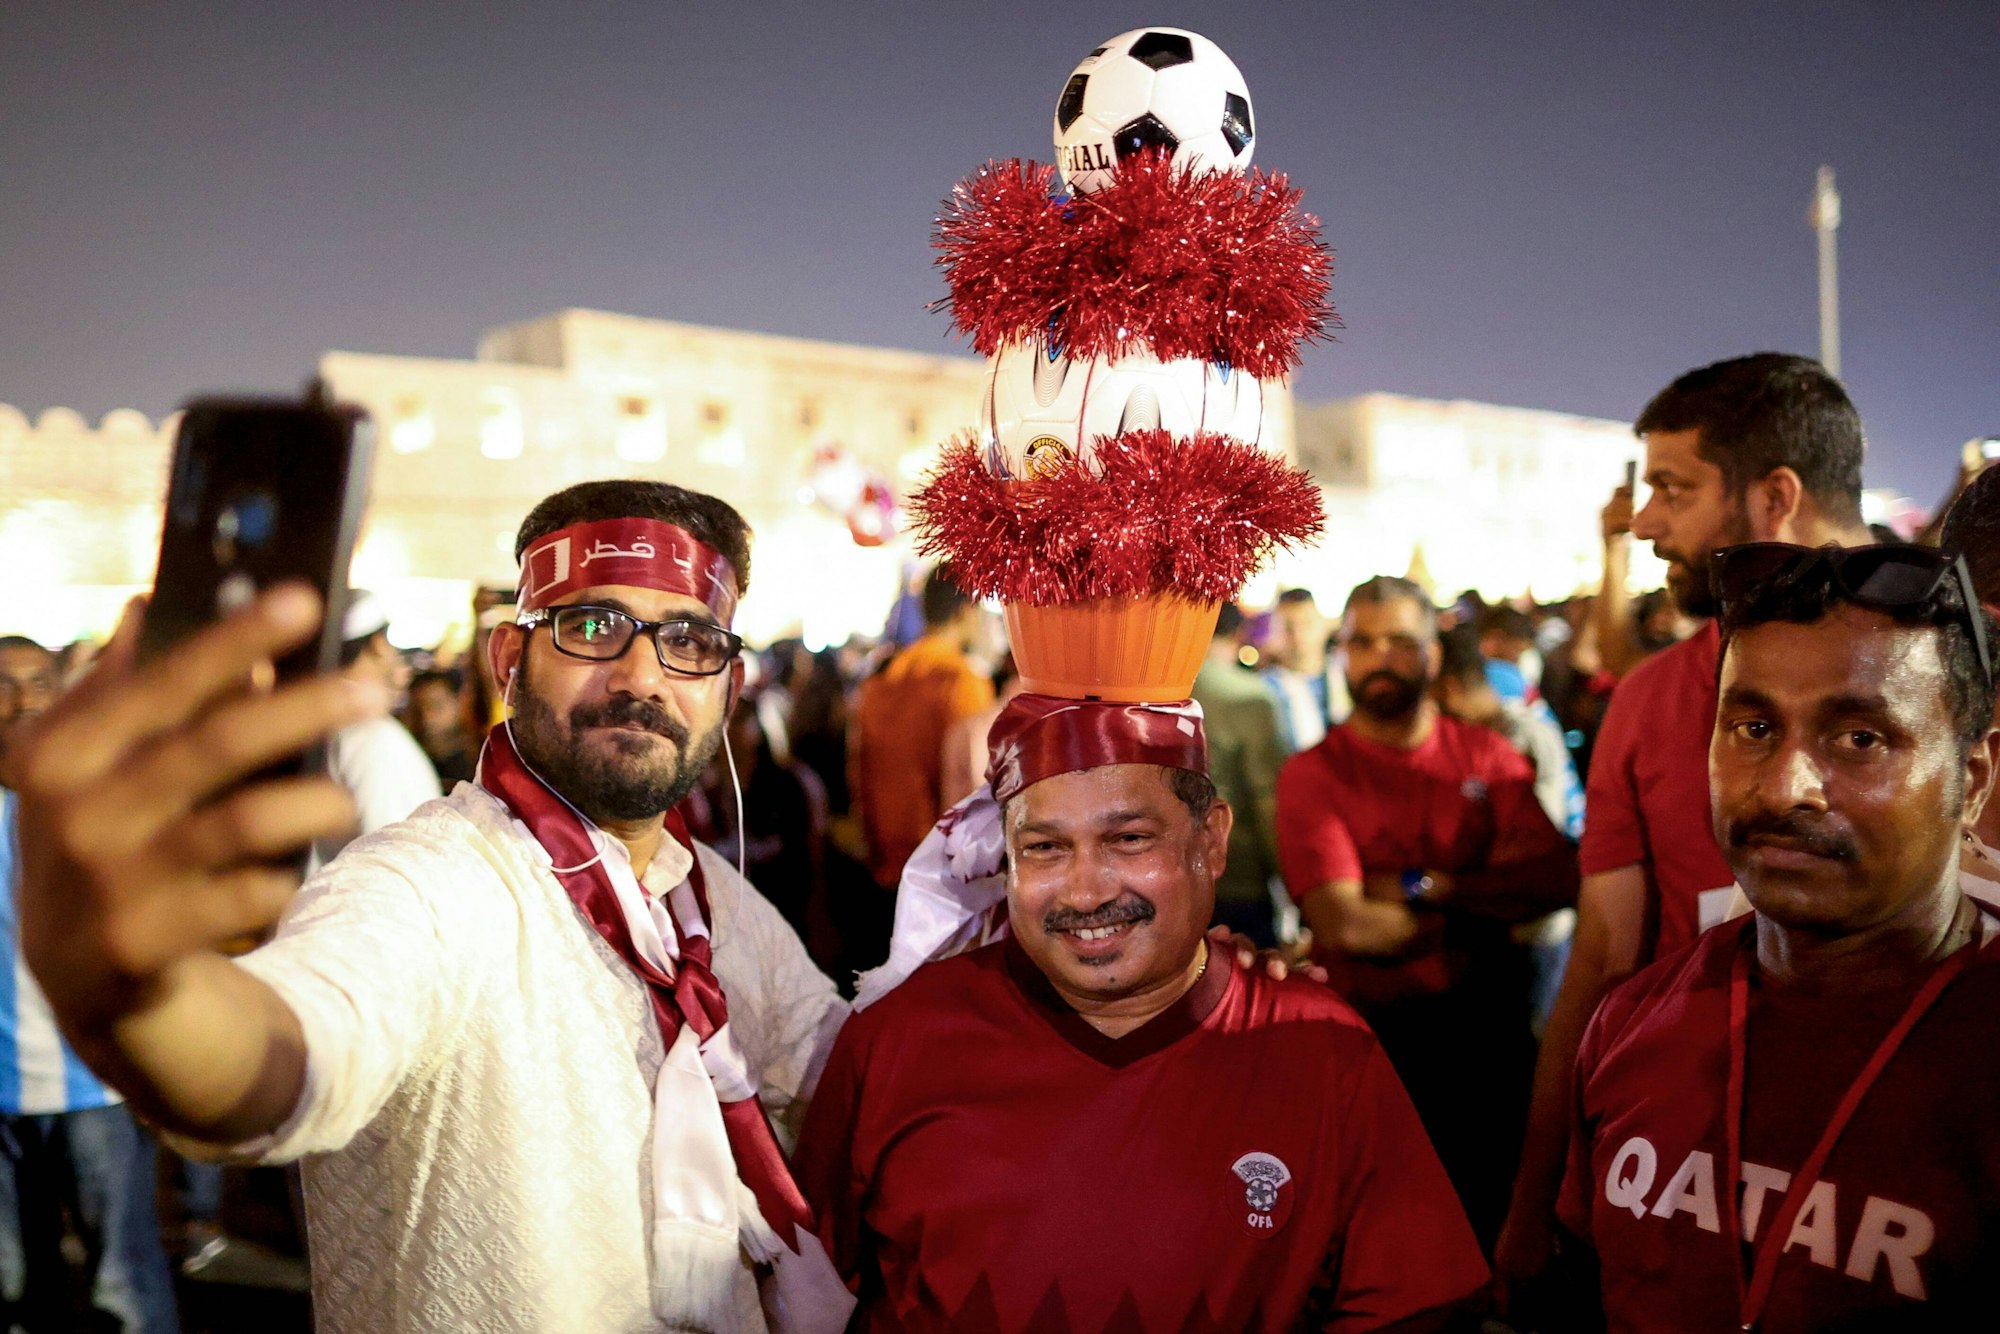 Drei Fans der katarischen Nationalmannschaft im Vorfeld der Weltmeisterschaft, einer von ihnen hat eine kuriose Kopfbedeckung.